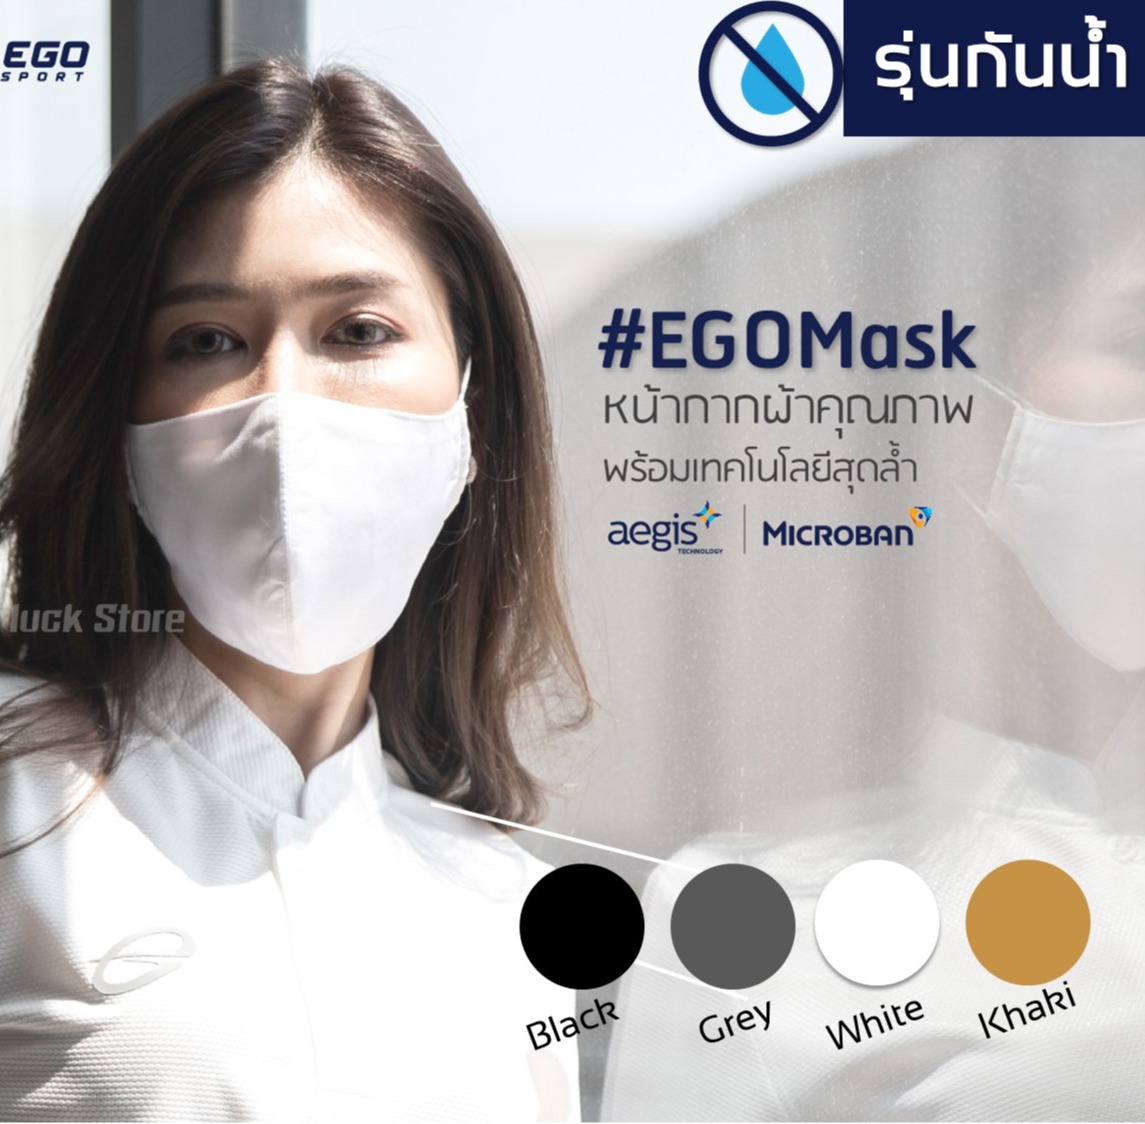 EGO Mask [รุ่นกันน้ำ] แท้ 100%  หน้ากากผ้า 2 ชั้น ด้านในผ้าคอตตอน ใส่สบายไม่ร้อน หายใจสะดวก กันน้ำดีเยี่ยม พร้อมส่ง